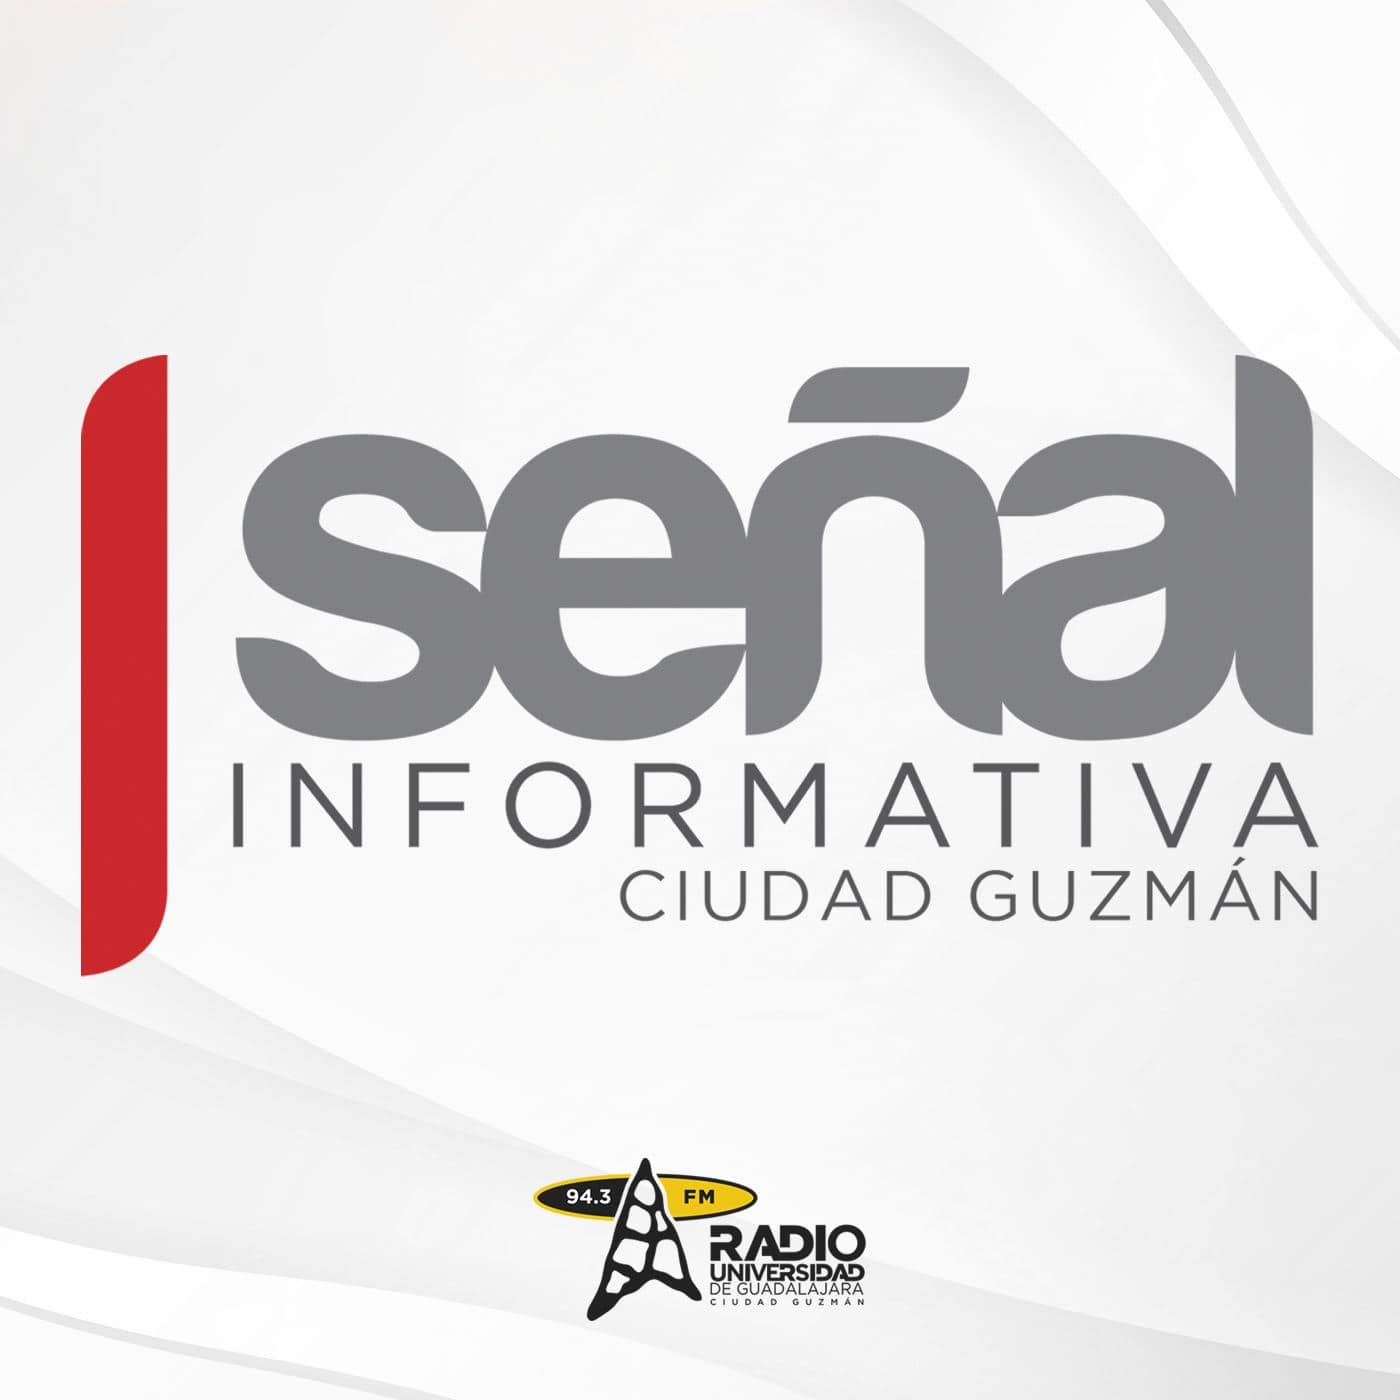 Señal Informativa Ciudad Guzmán, 10 de noviembre